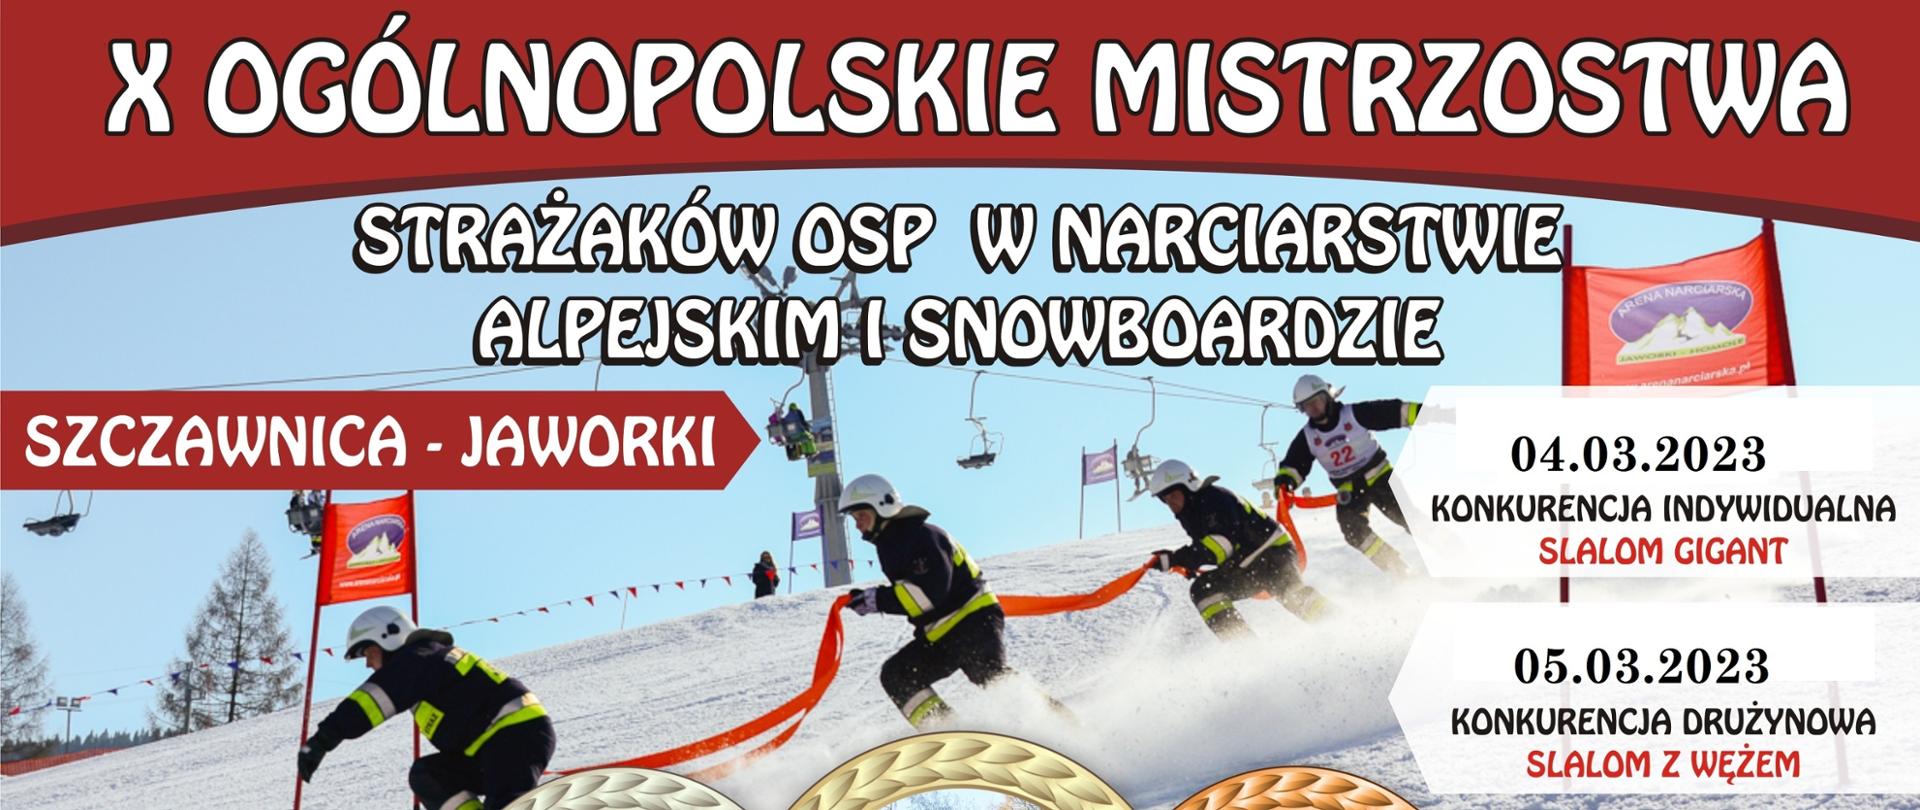 X Ogólnopolskie Mistrzostwa Strażaków OSP w Narciarstwie Alpejskim i Snowboardzie 2023, Szczawnica Jaworki czwarty i piąty marzec 2023